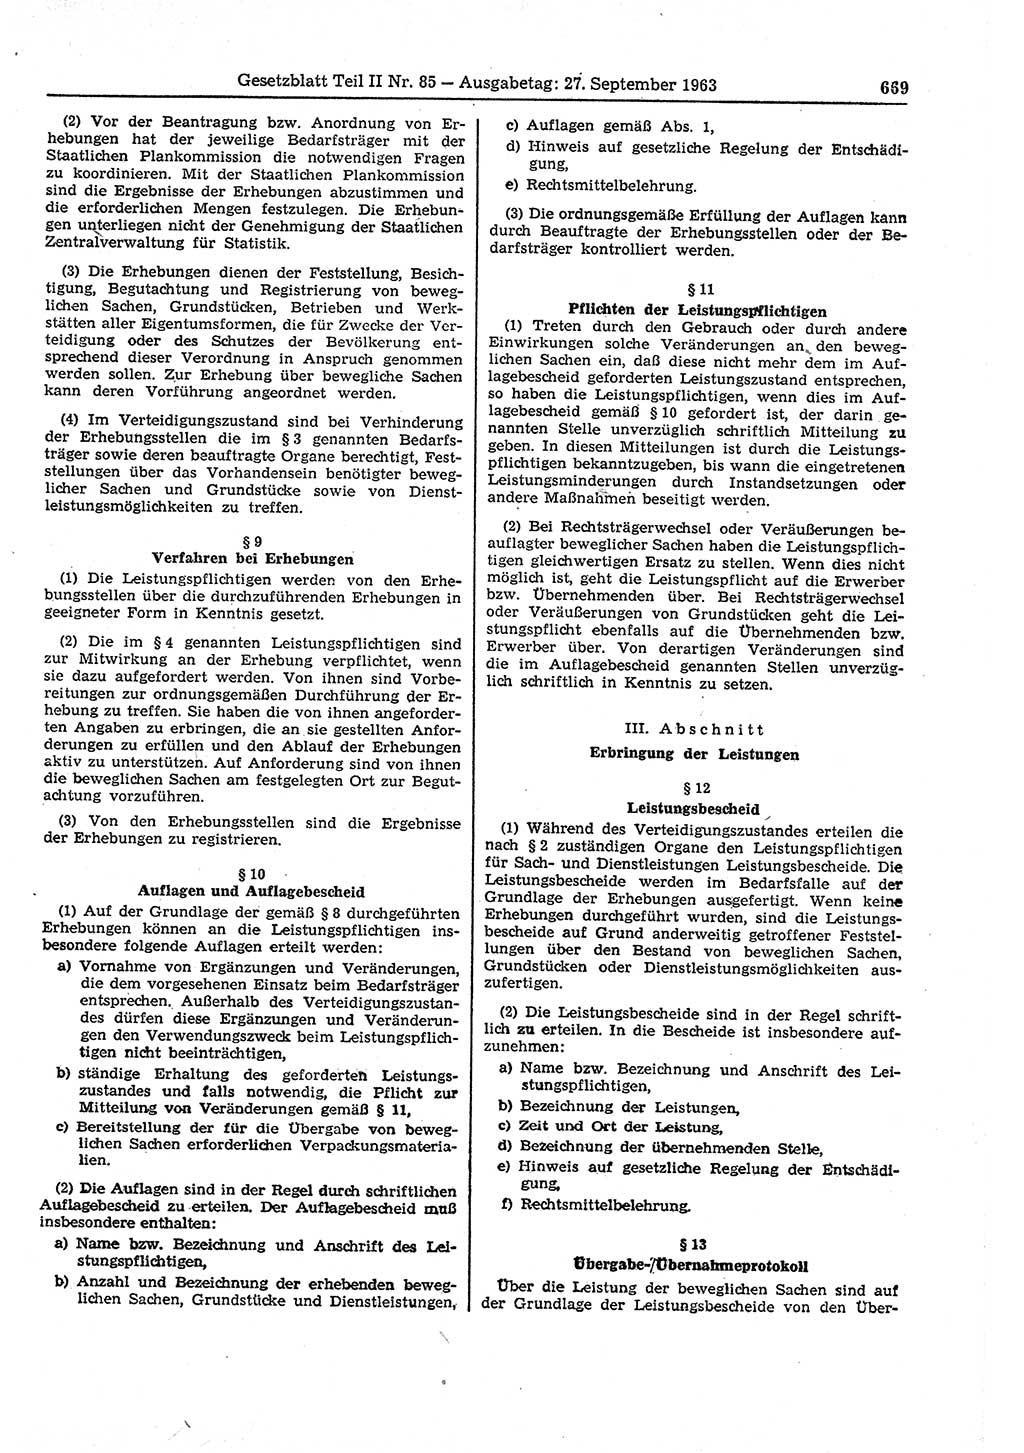 Gesetzblatt (GBl.) der Deutschen Demokratischen Republik (DDR) Teil ⅠⅠ 1963, Seite 669 (GBl. DDR ⅠⅠ 1963, S. 669)